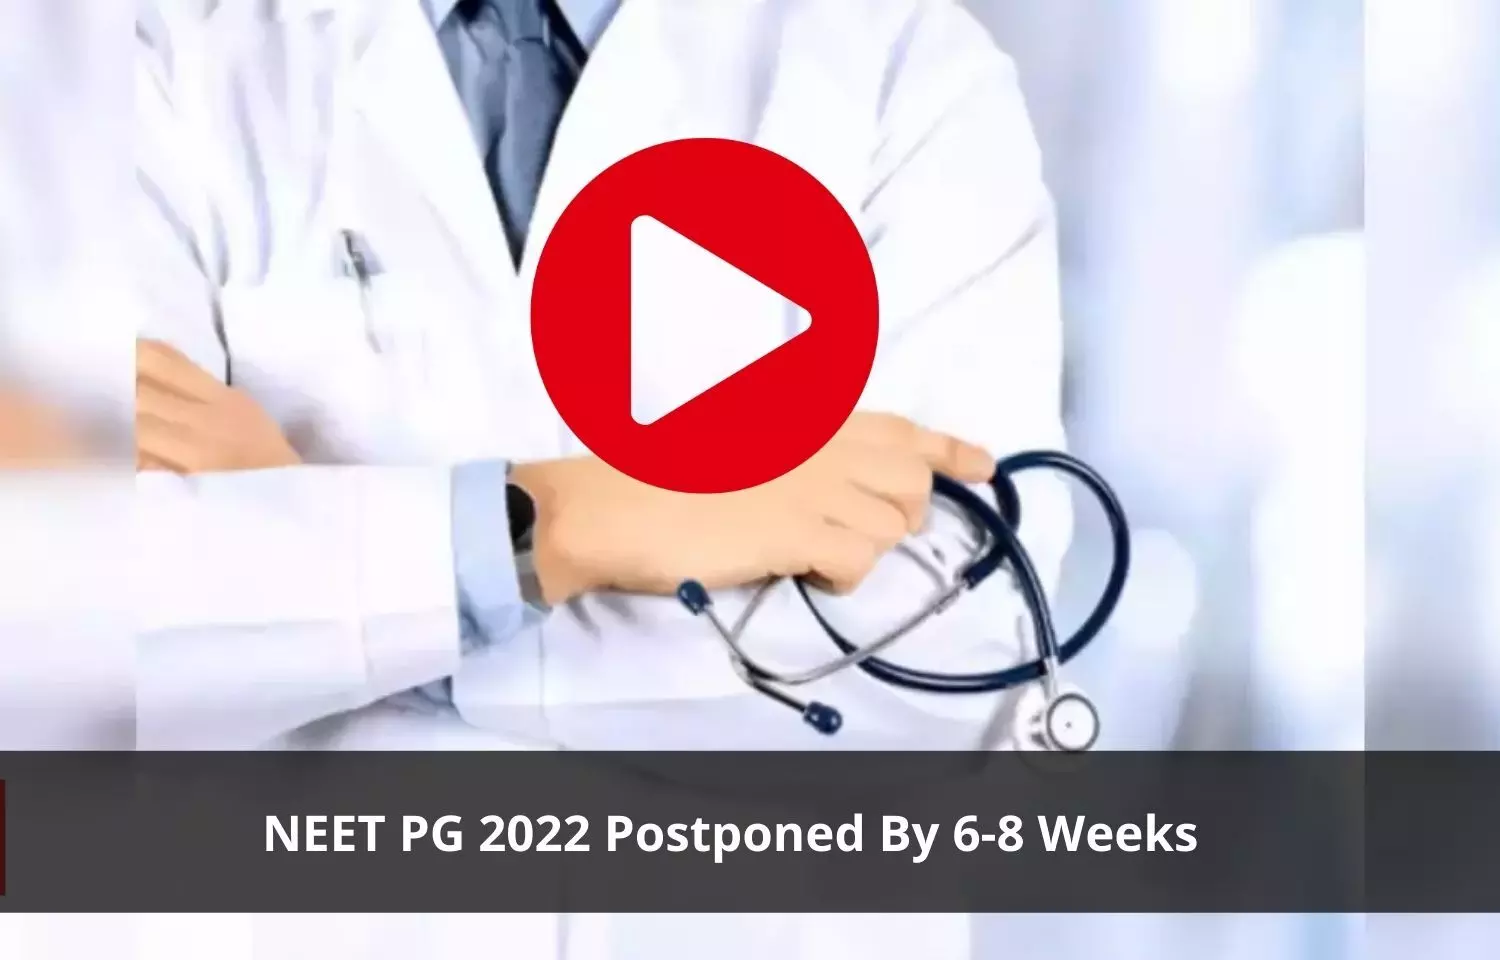 NEET PG 2022 exam postponed by 6-8 Weeks: Centre